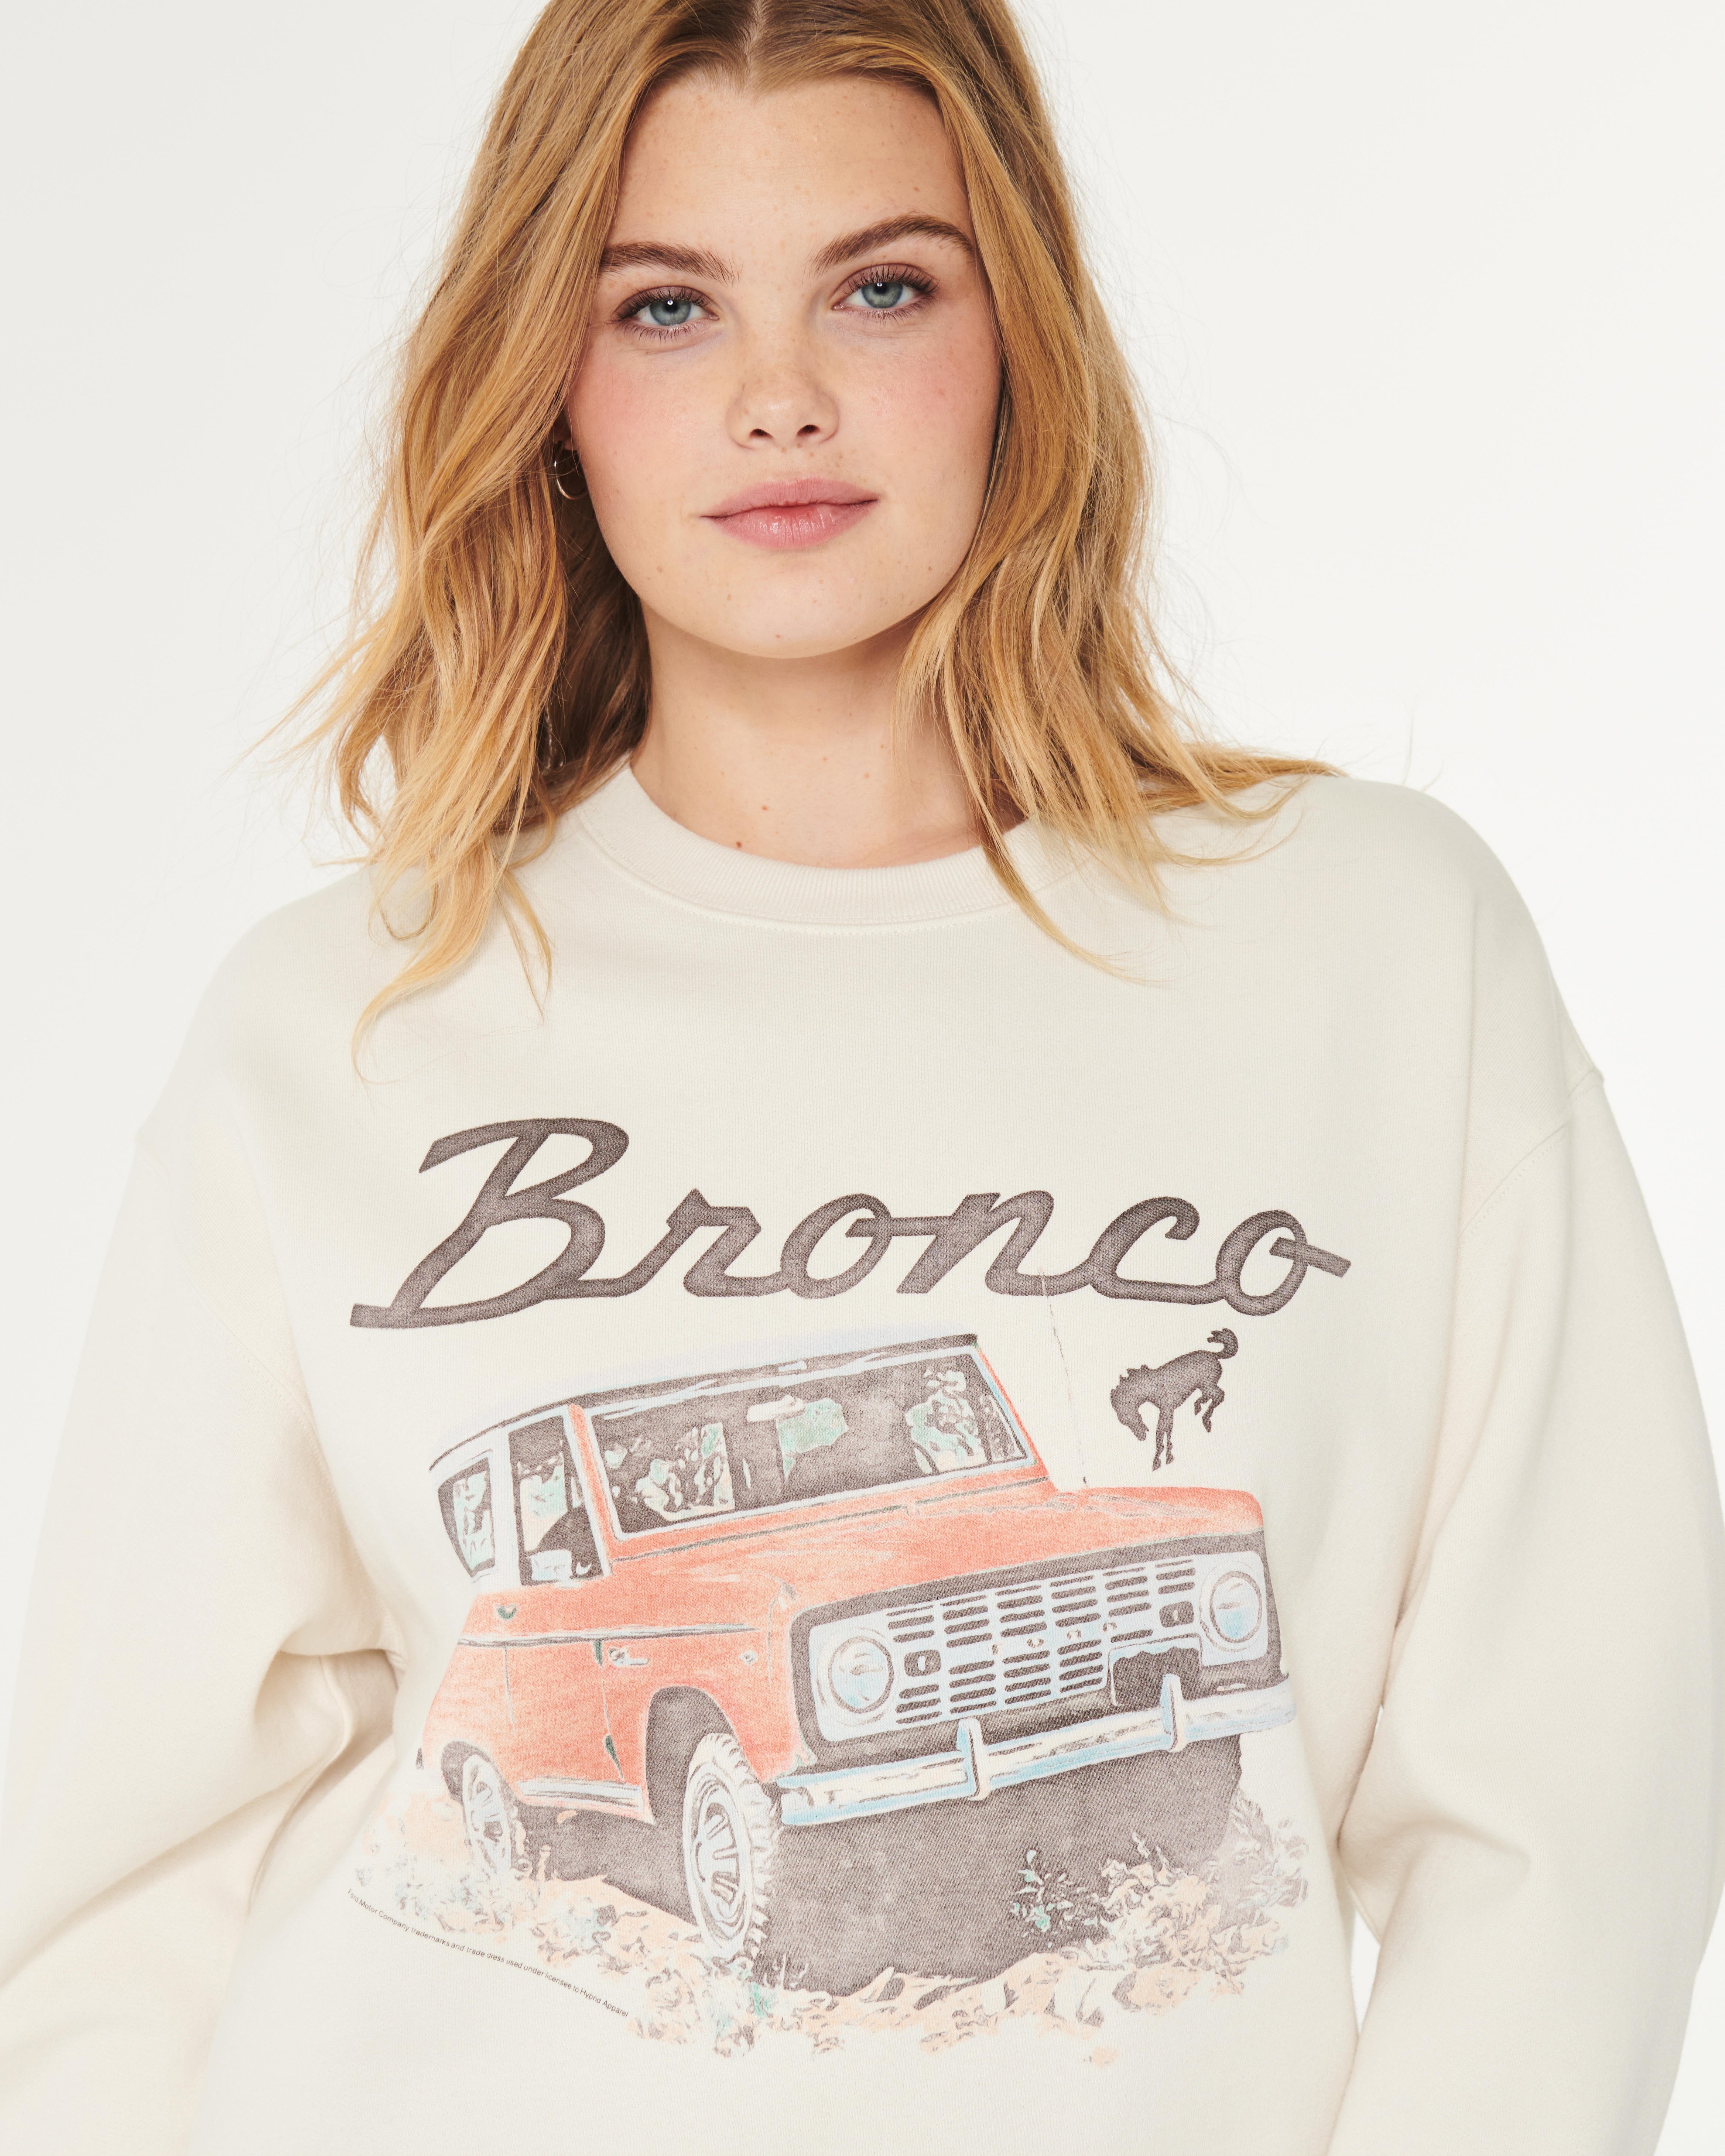 Oversized Ford Bronco Graphic Crew Sweatshirt